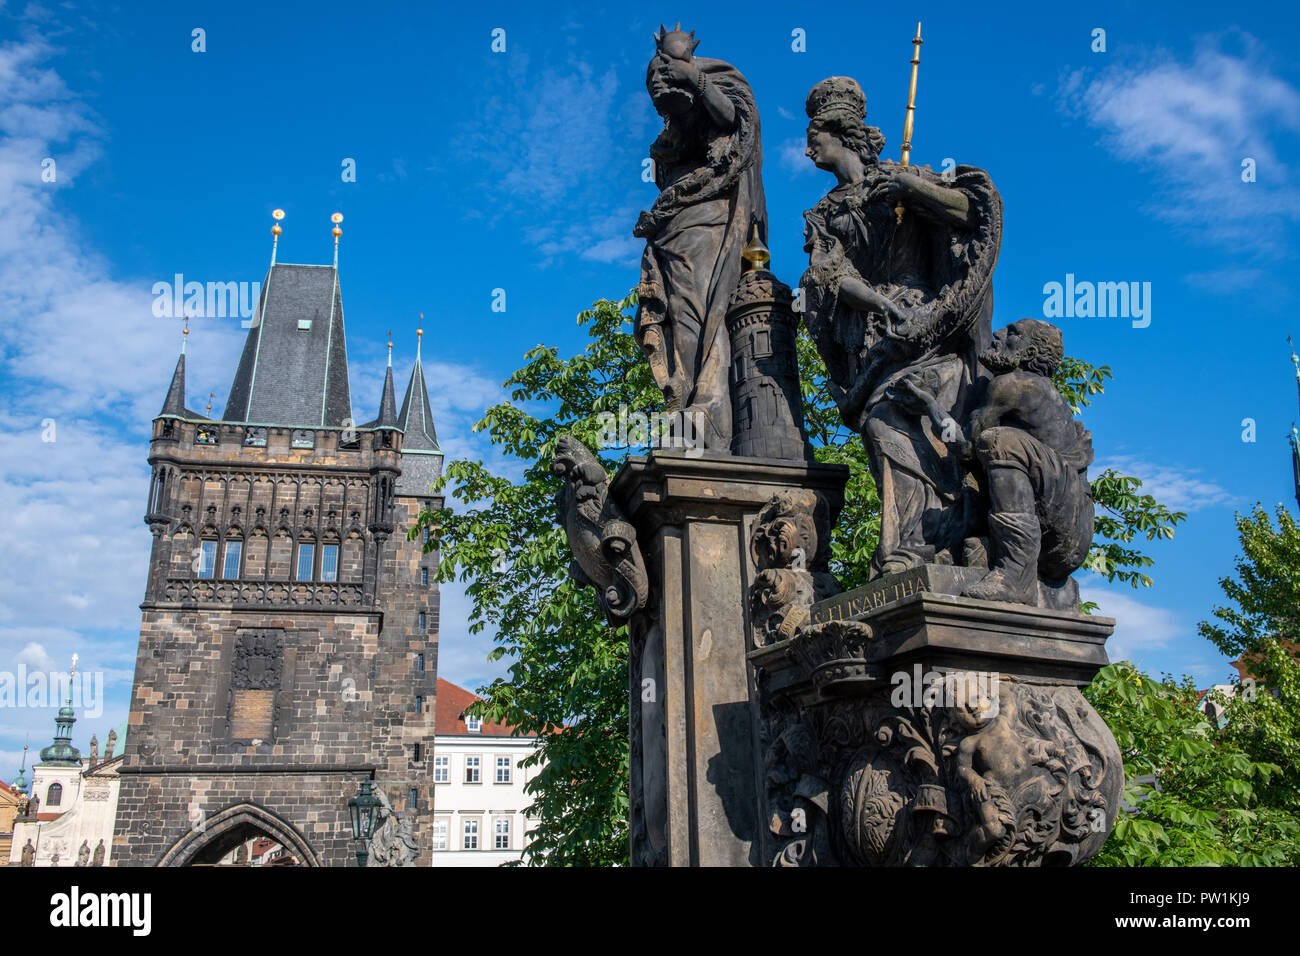 In der Nähe der gotischen Skulptur über die Karlsbrücke in Prag - Tschechische Republik Stockfoto